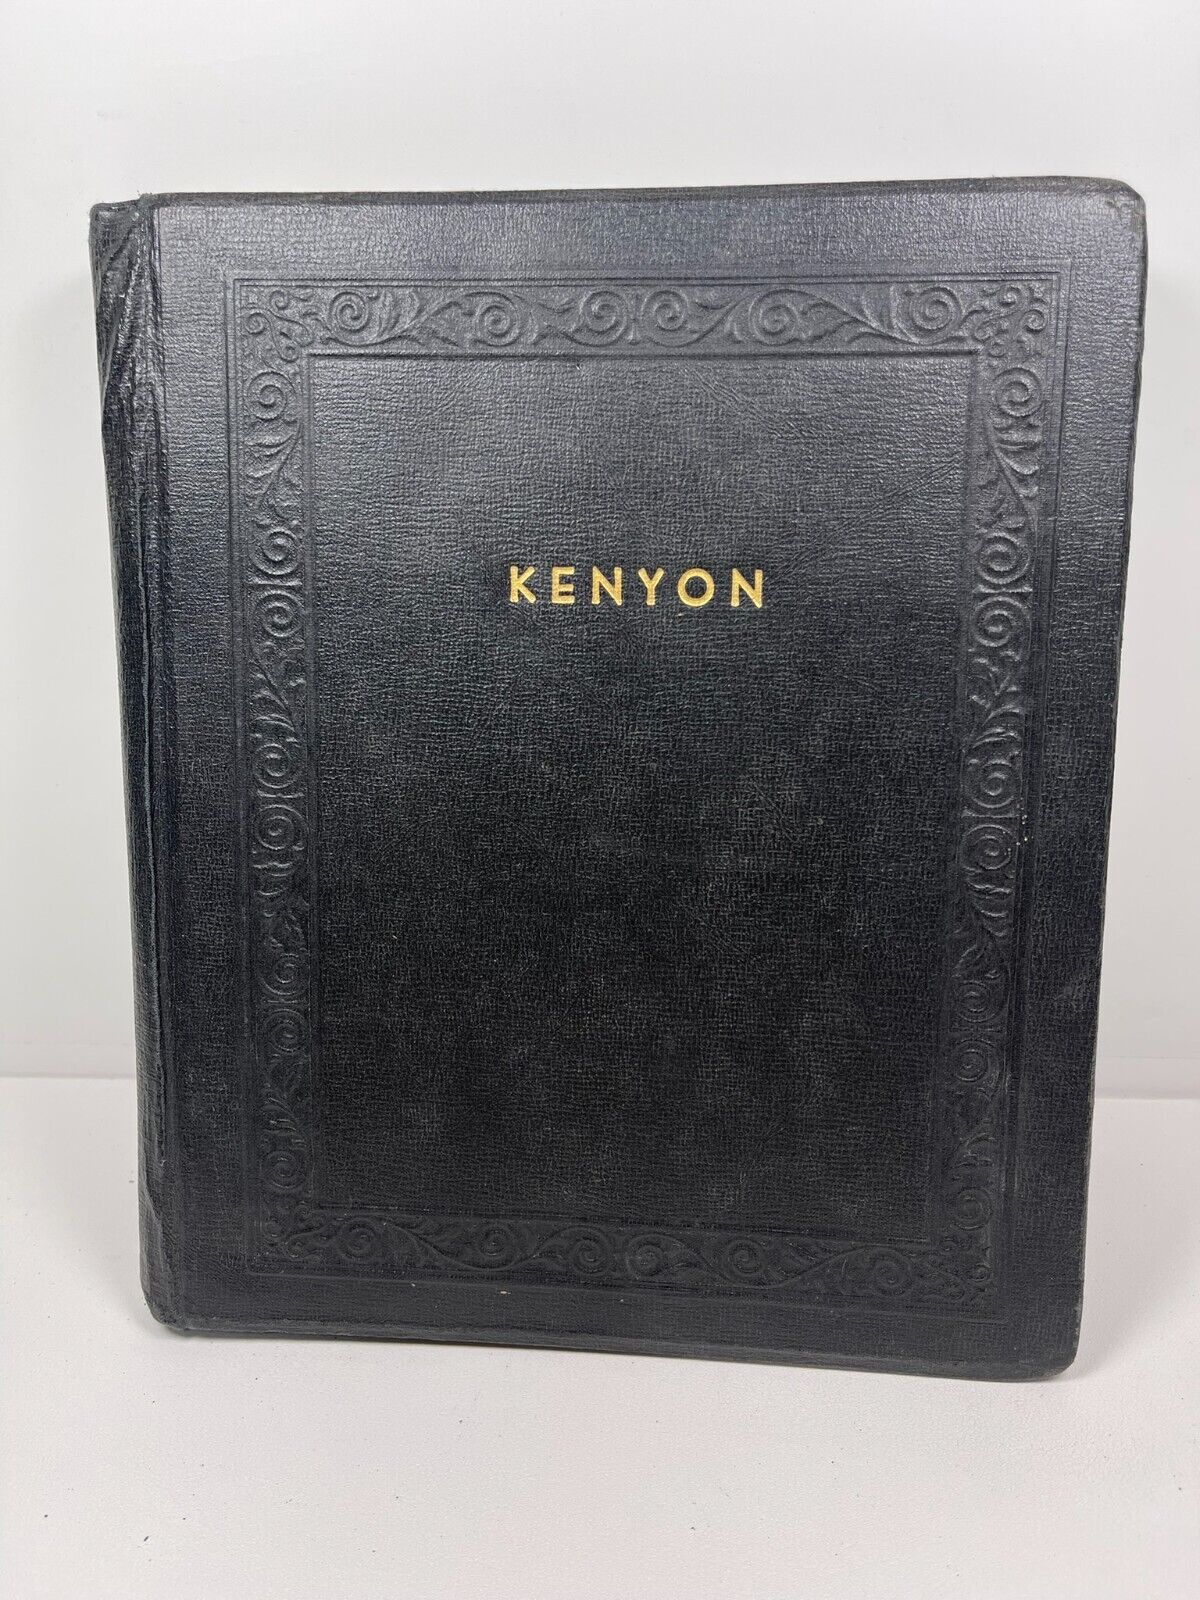 Kenyon College Ohio Old Rare Picture Album